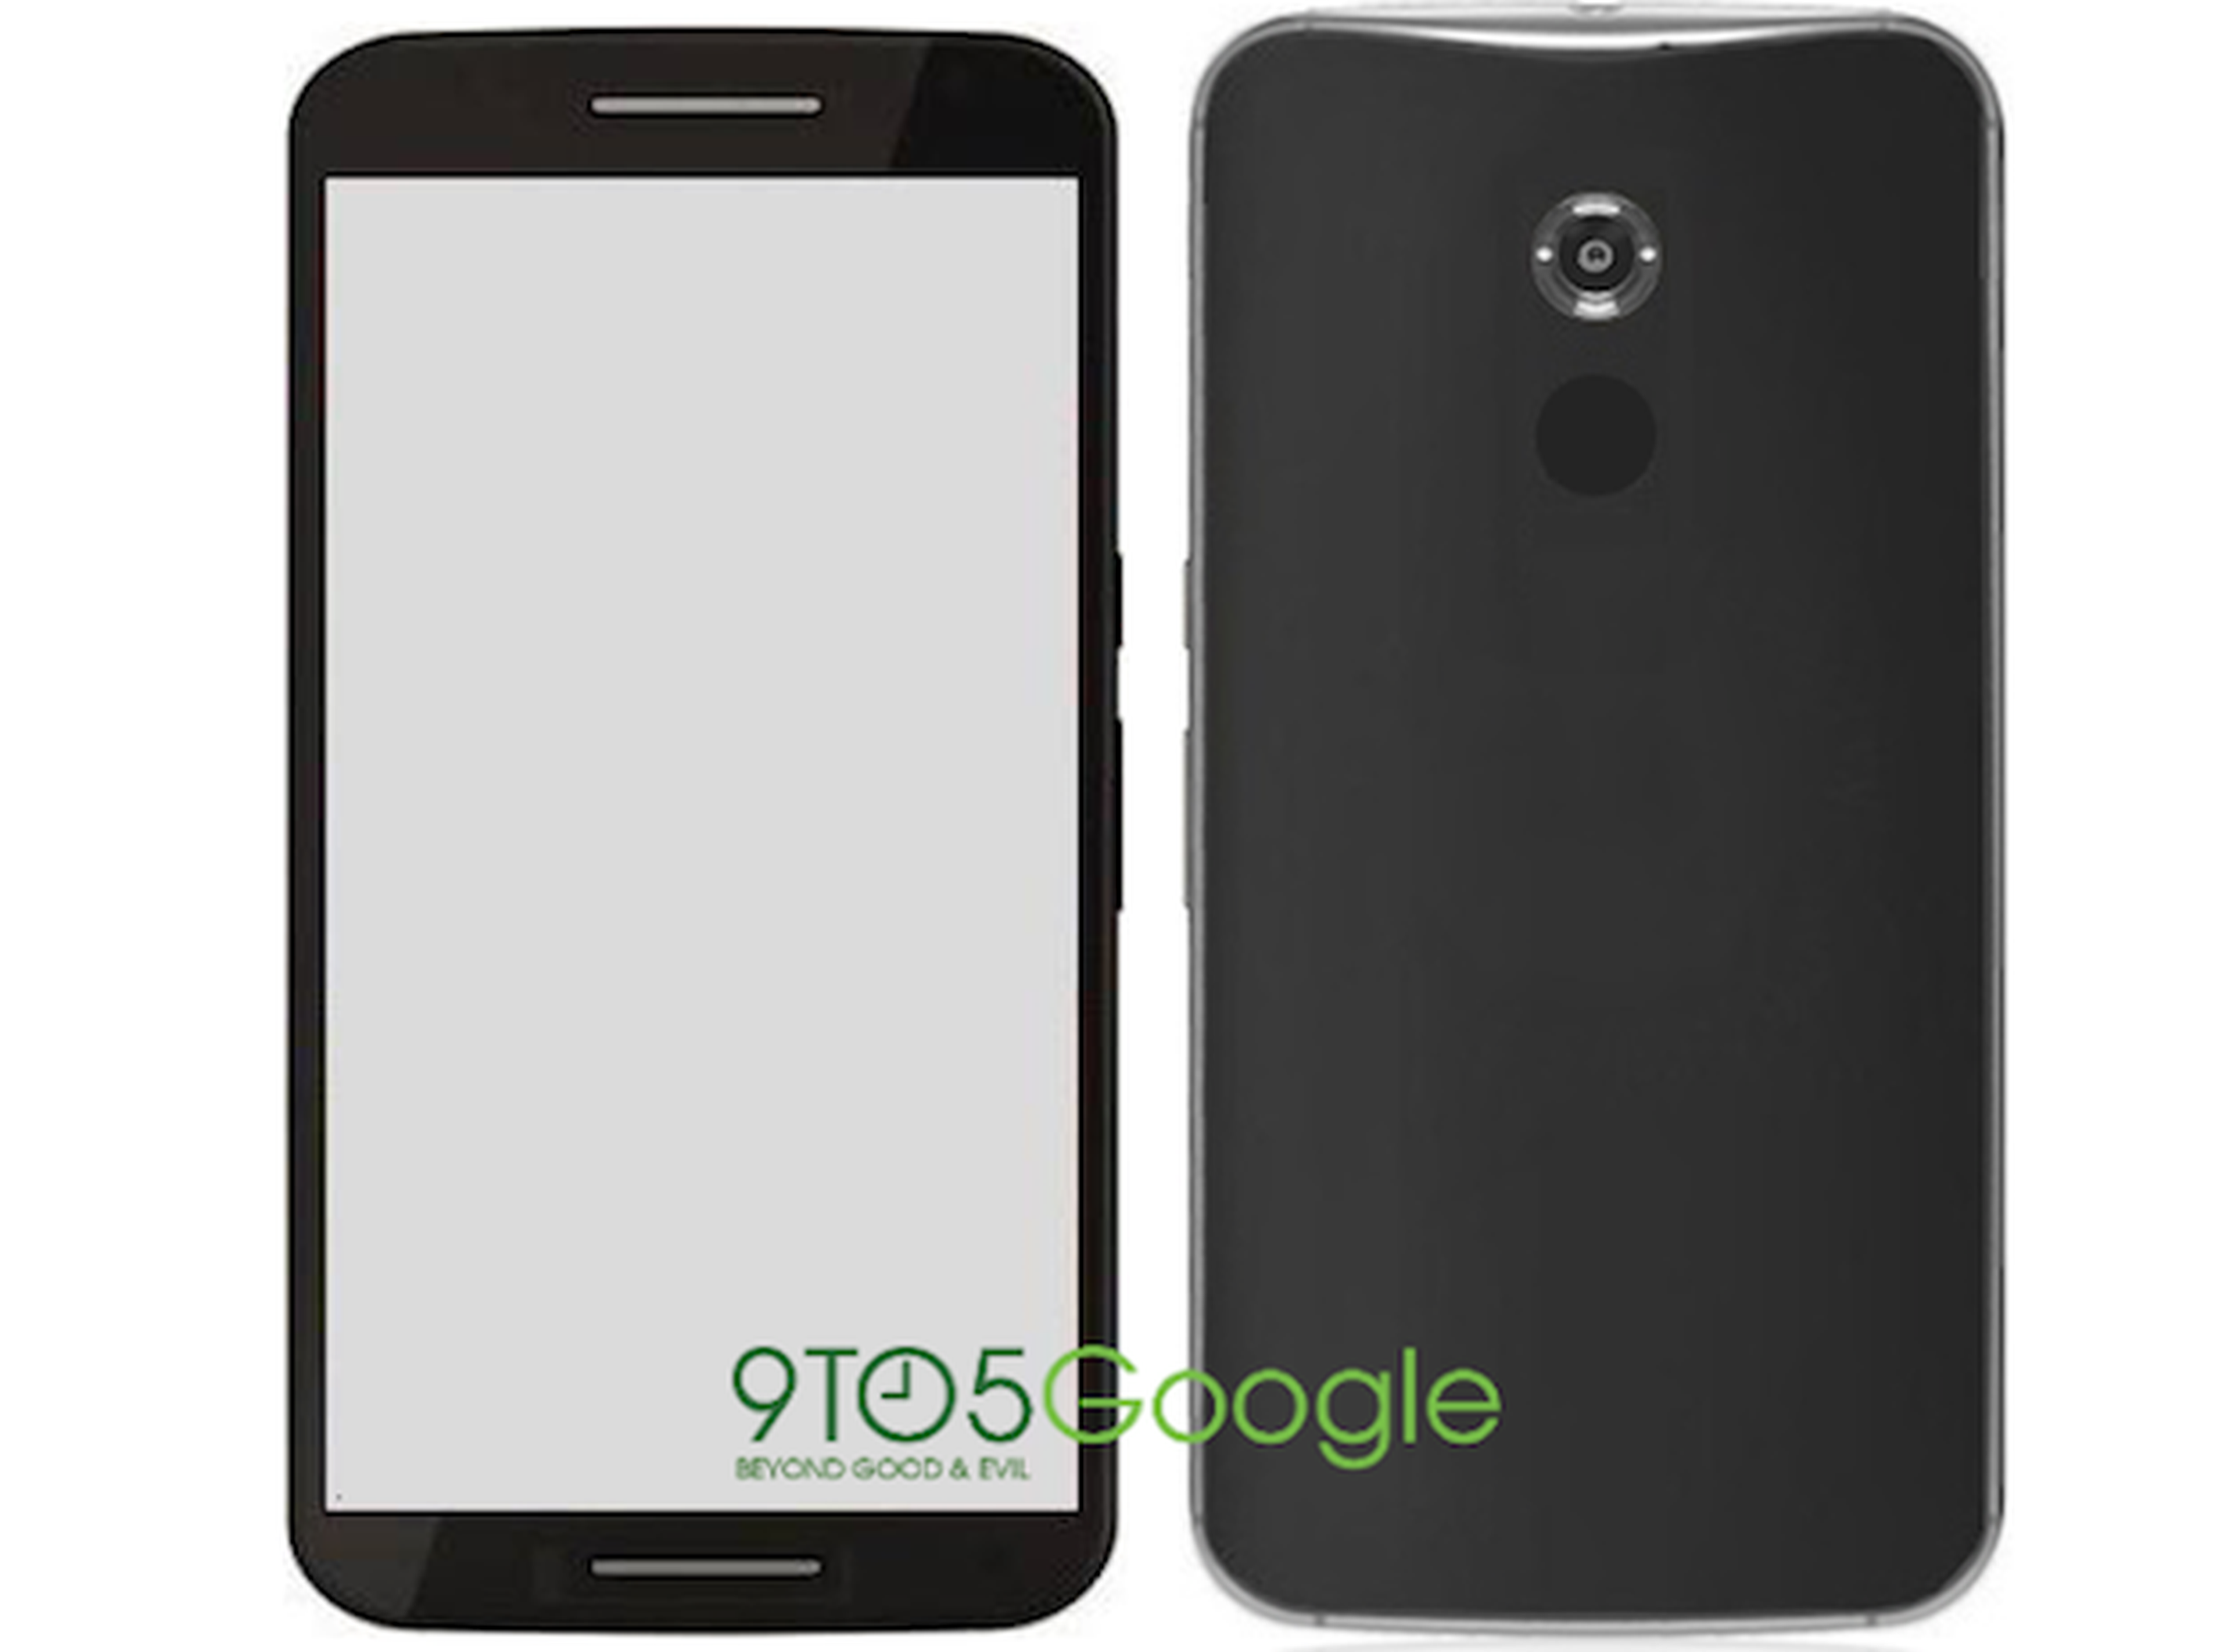 Nexus 6 "Shamu" de Motorola